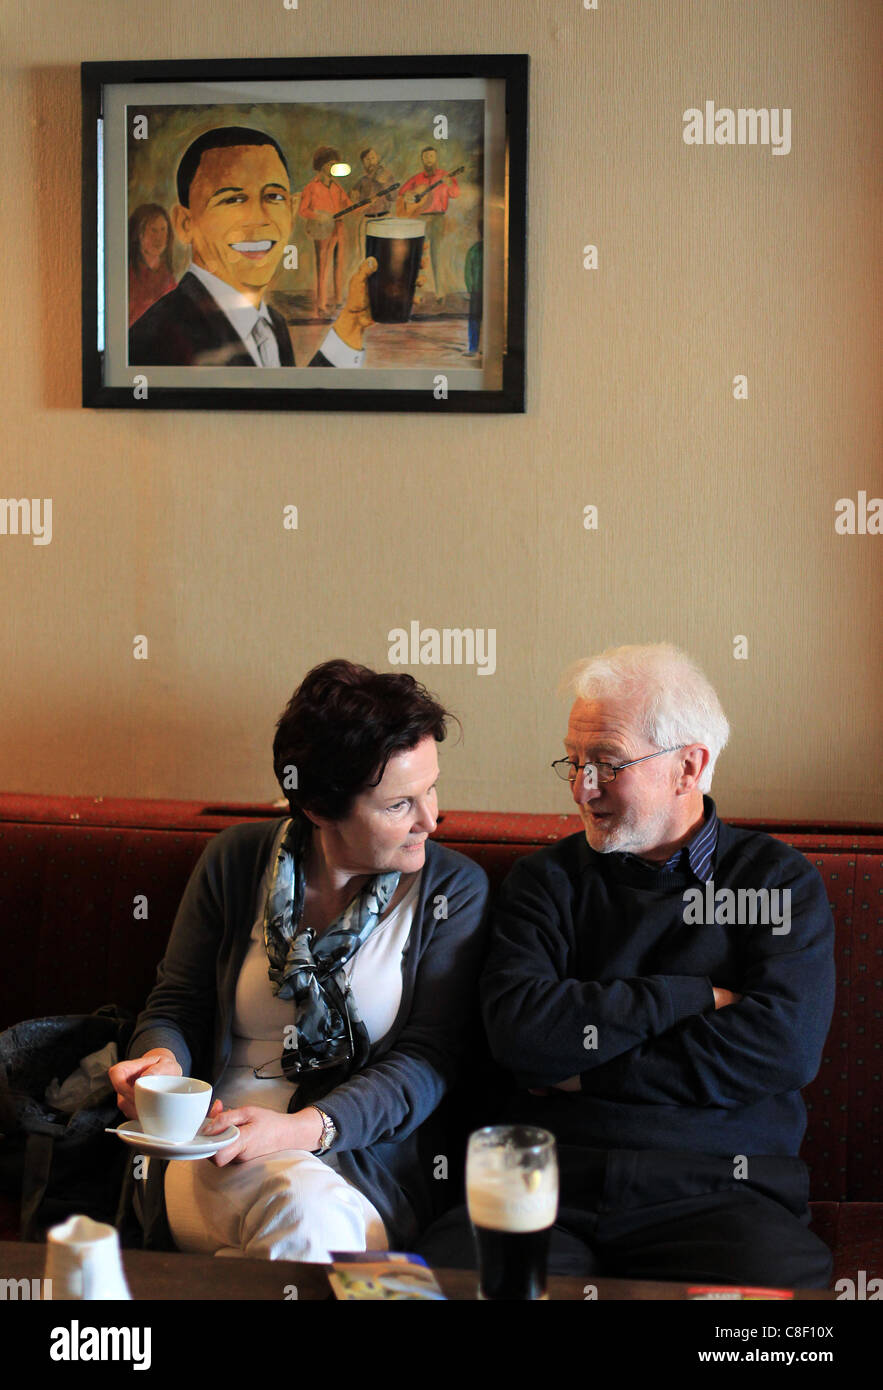 Deux personnes âgées prendre une pinte et une tasse de thé comme une photo du président américain Barack Obama est suspendu au-dessus d'eux dans un pub irlandais Banque D'Images